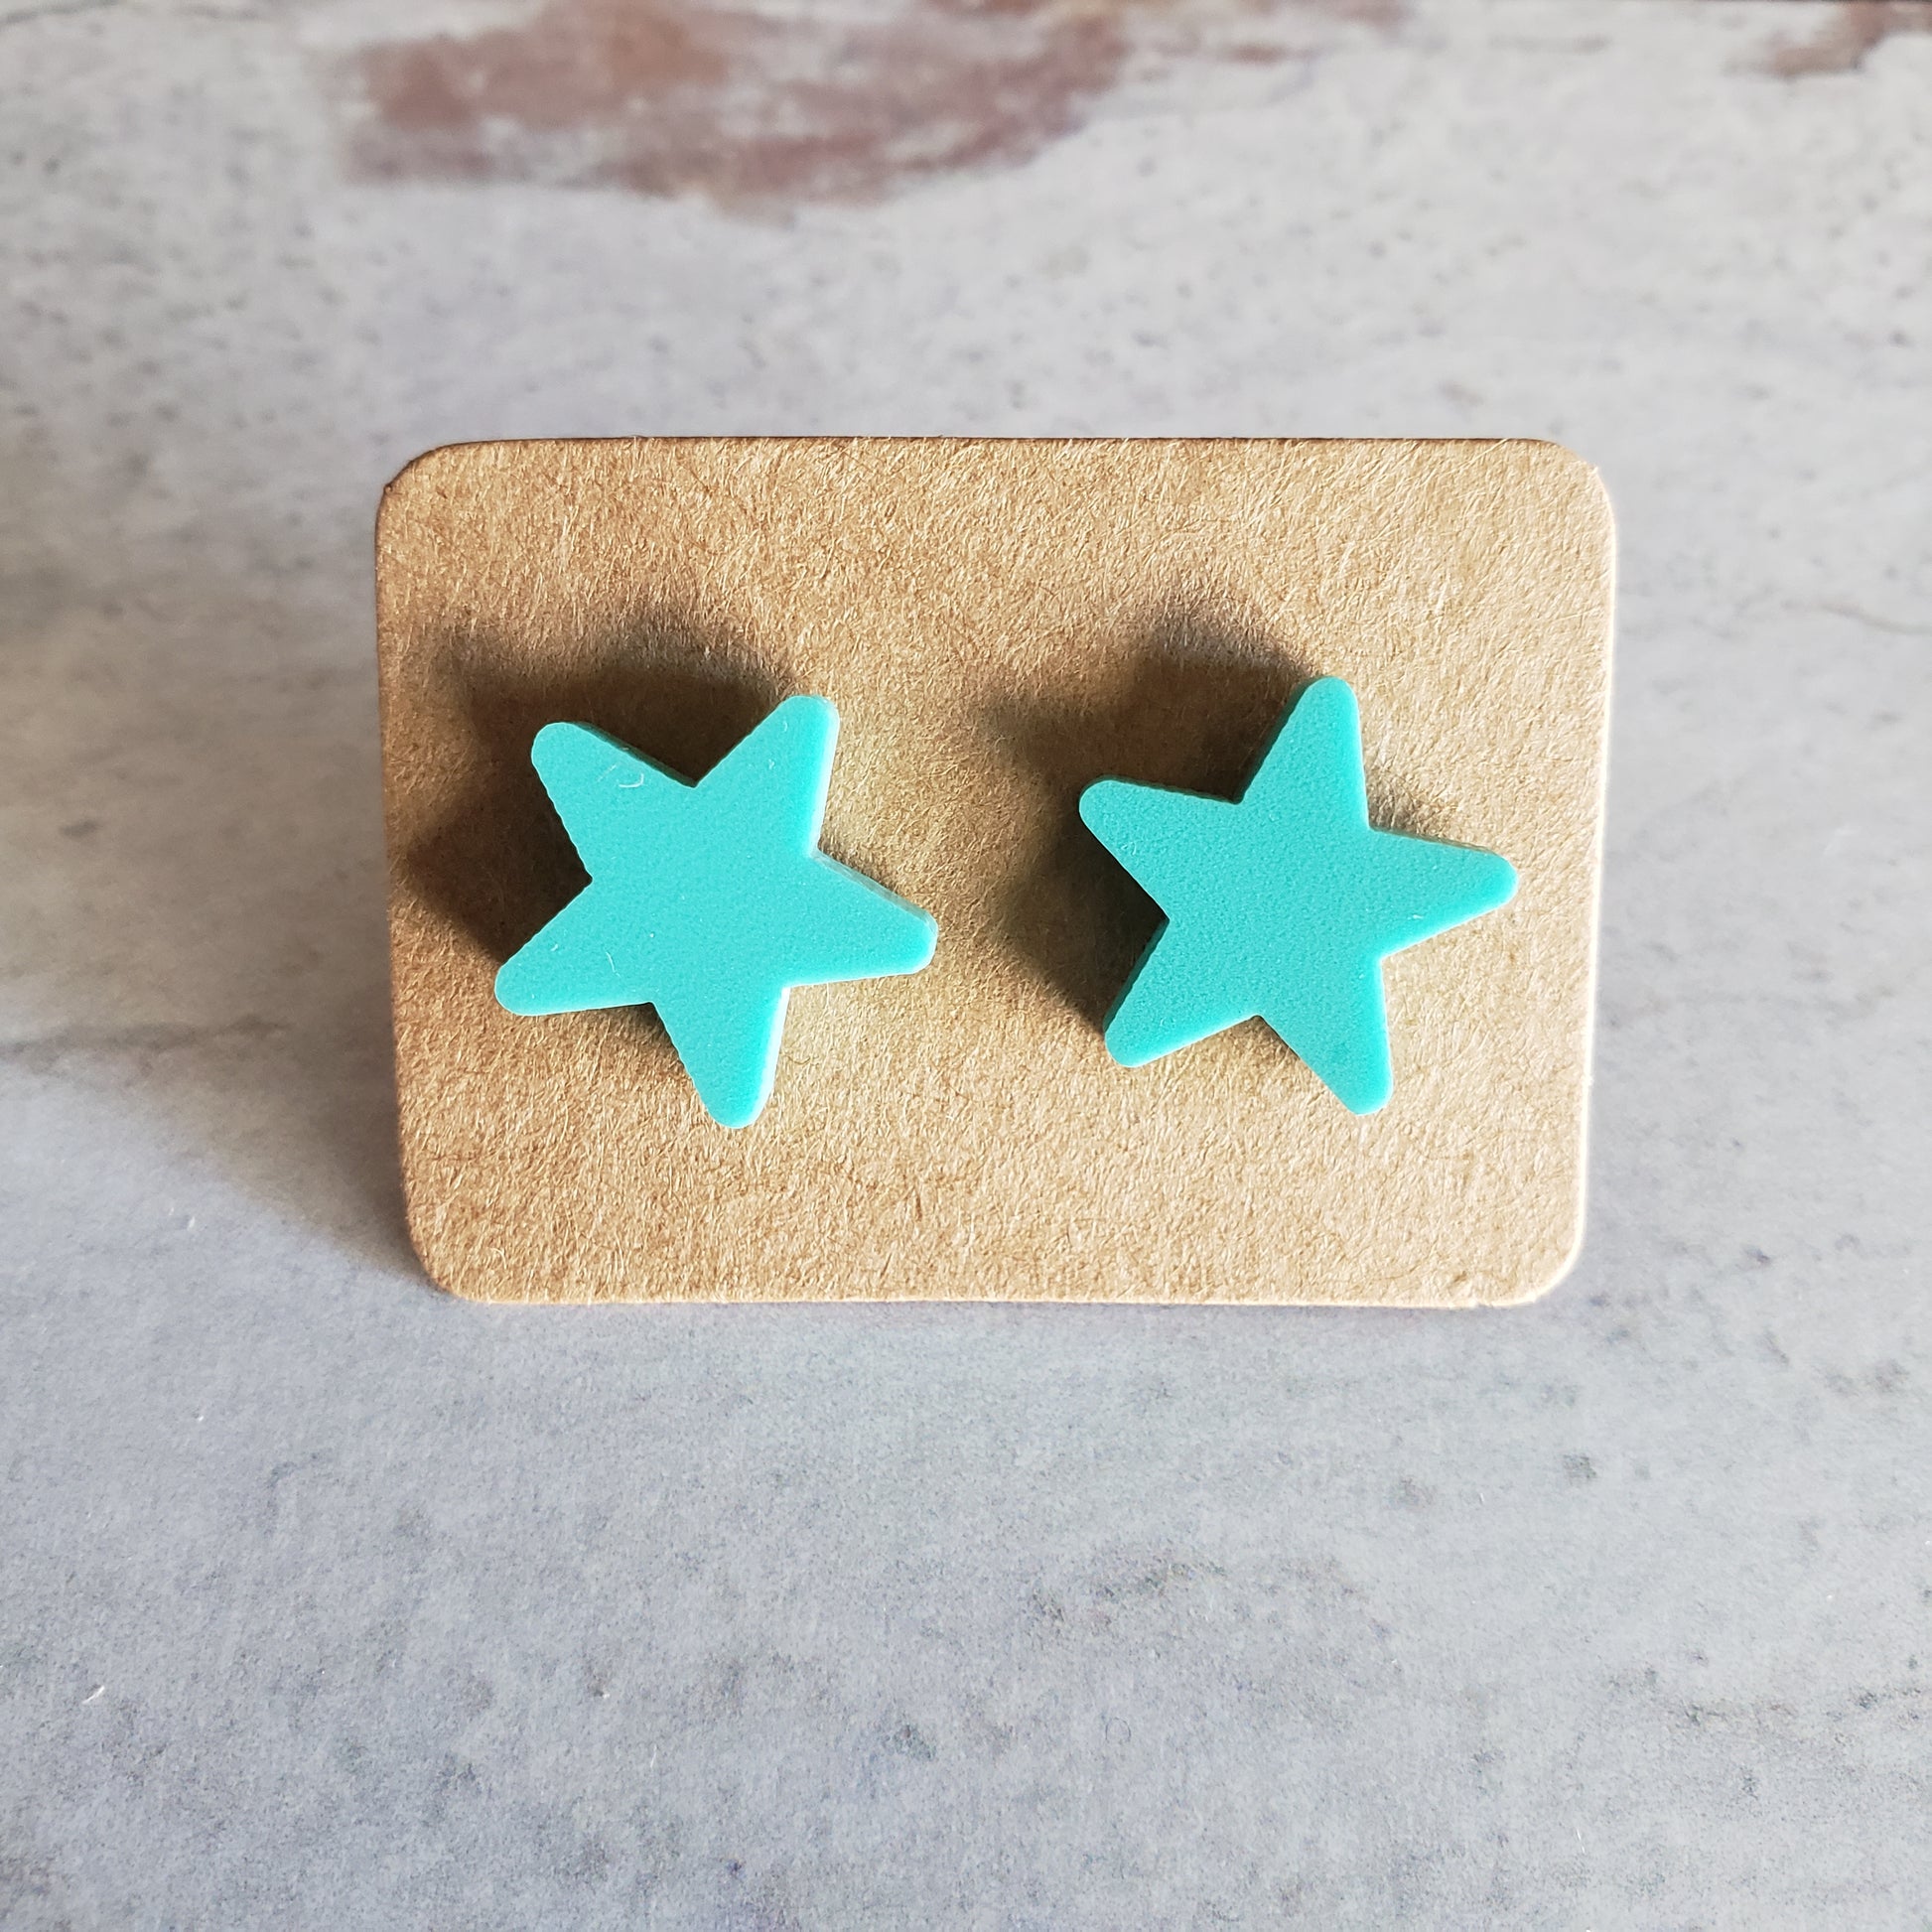 Matte mint green star stud earrings on earring cards